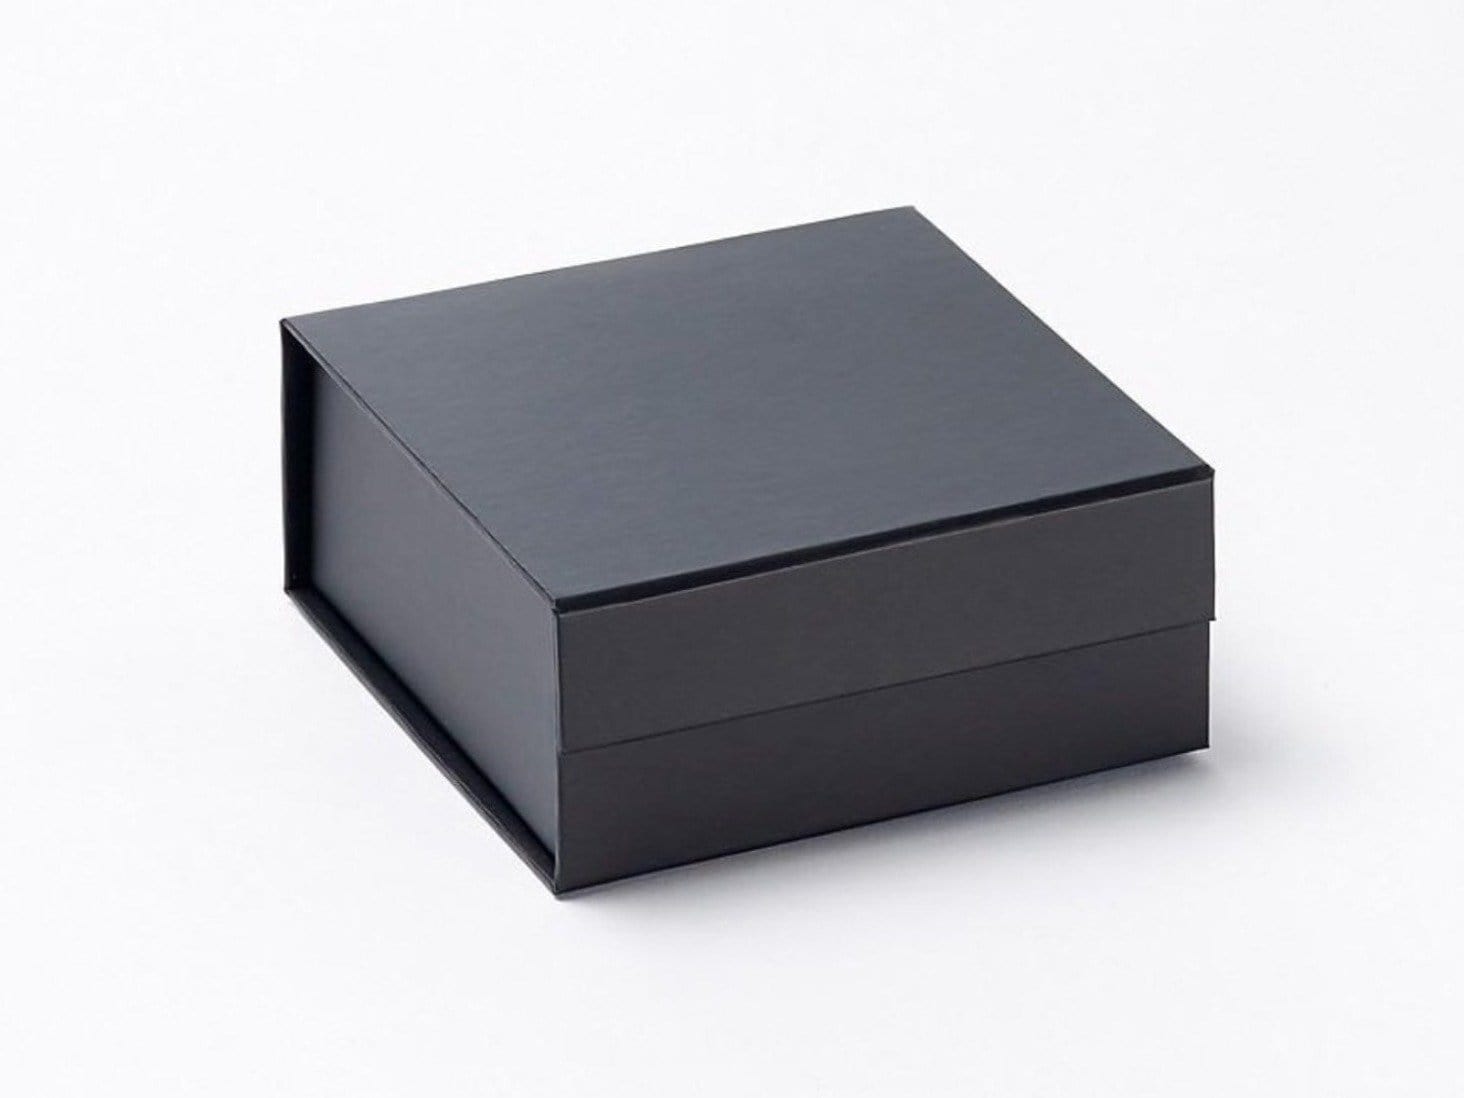 Luxury Small Black Folding Wholesale Gift Boxes From Stock Foldabox Uk And Europe